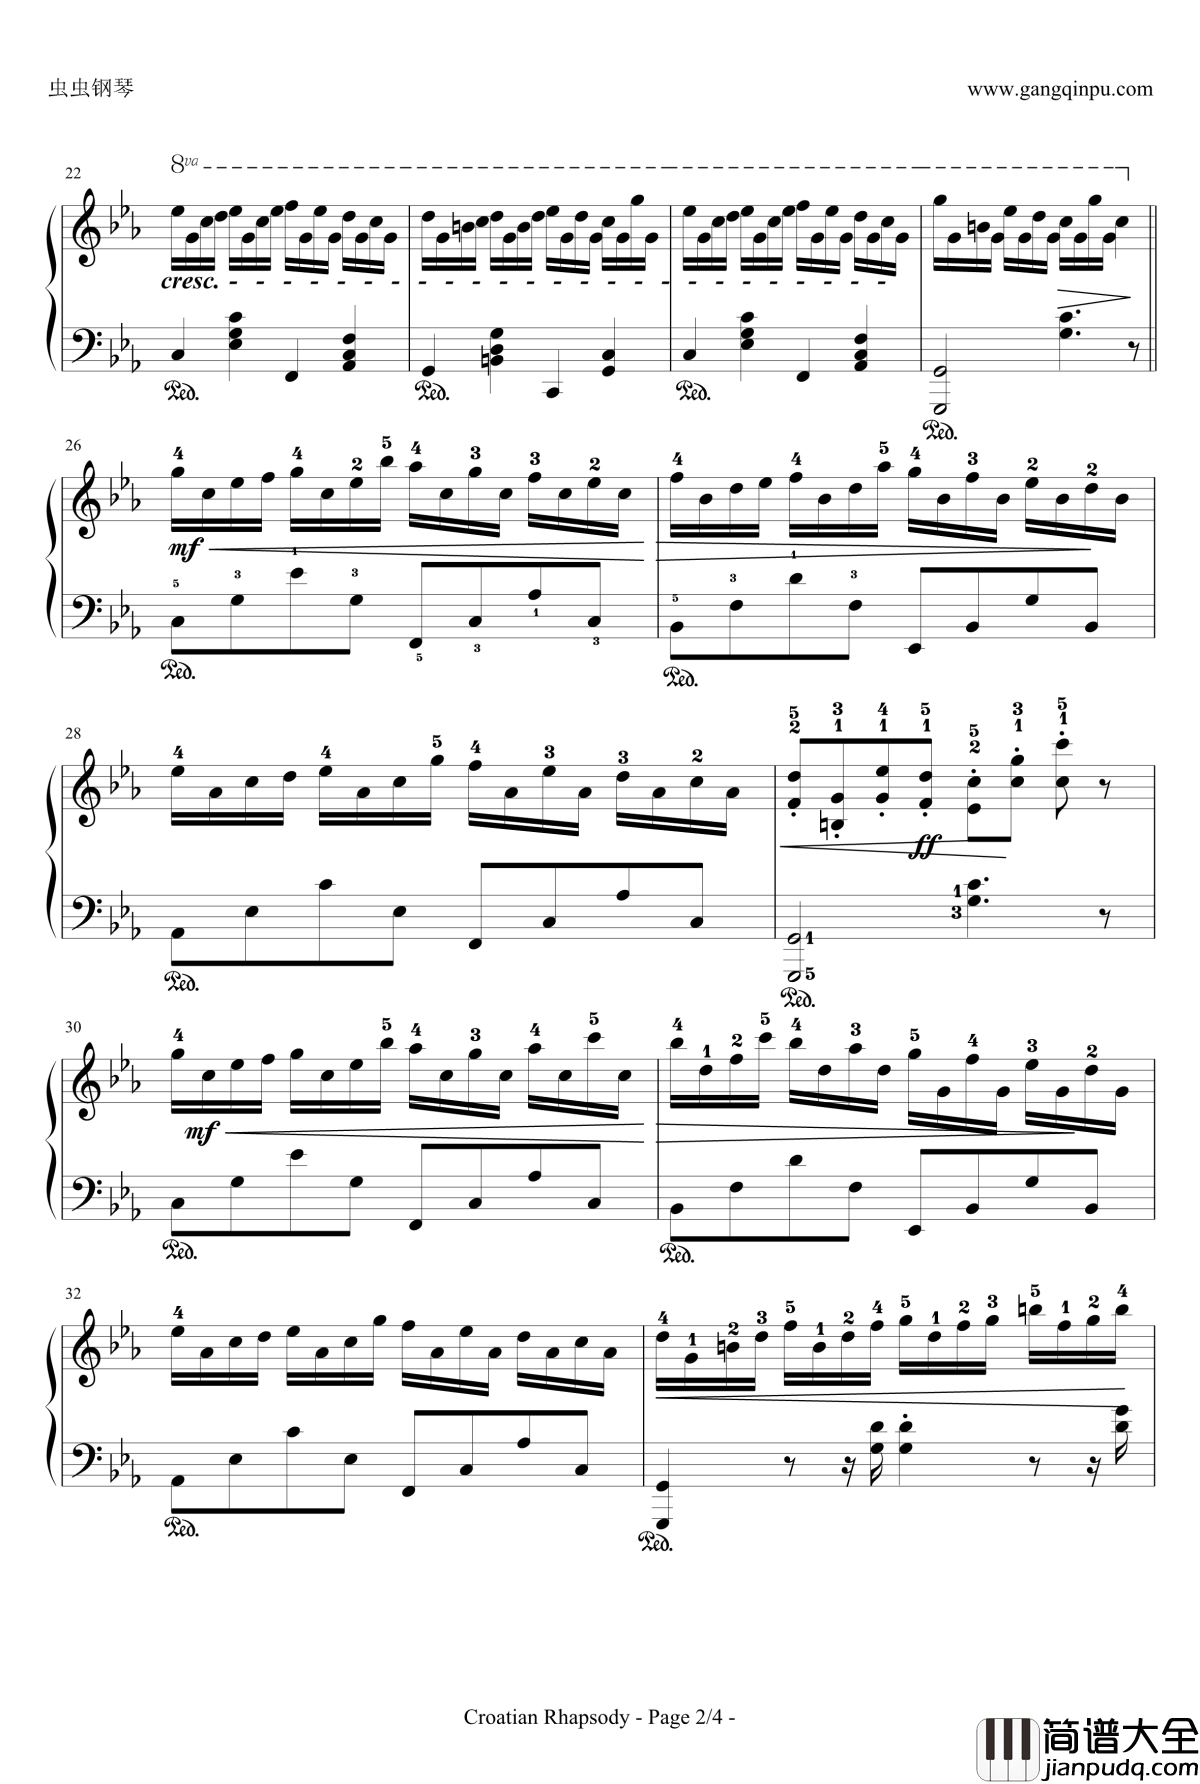 克罗地亚狂想曲钢琴谱_带指法简易版学生最爱_马克西姆_Maksim·Mrvica